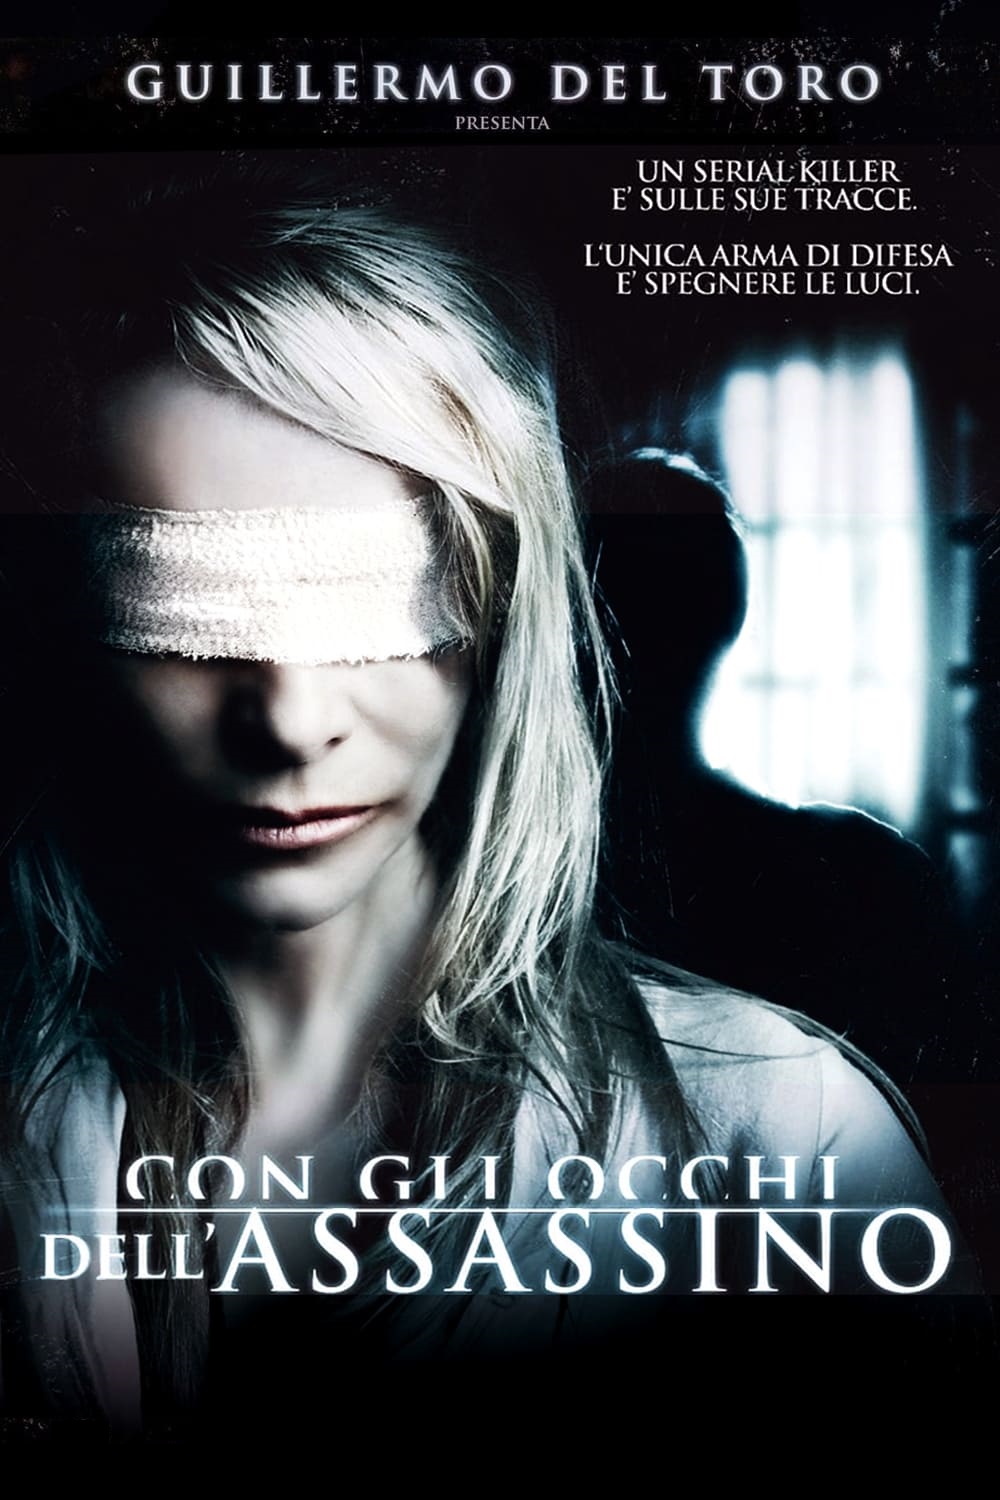 Con gli occhi dell’assassino [HD] (2010)